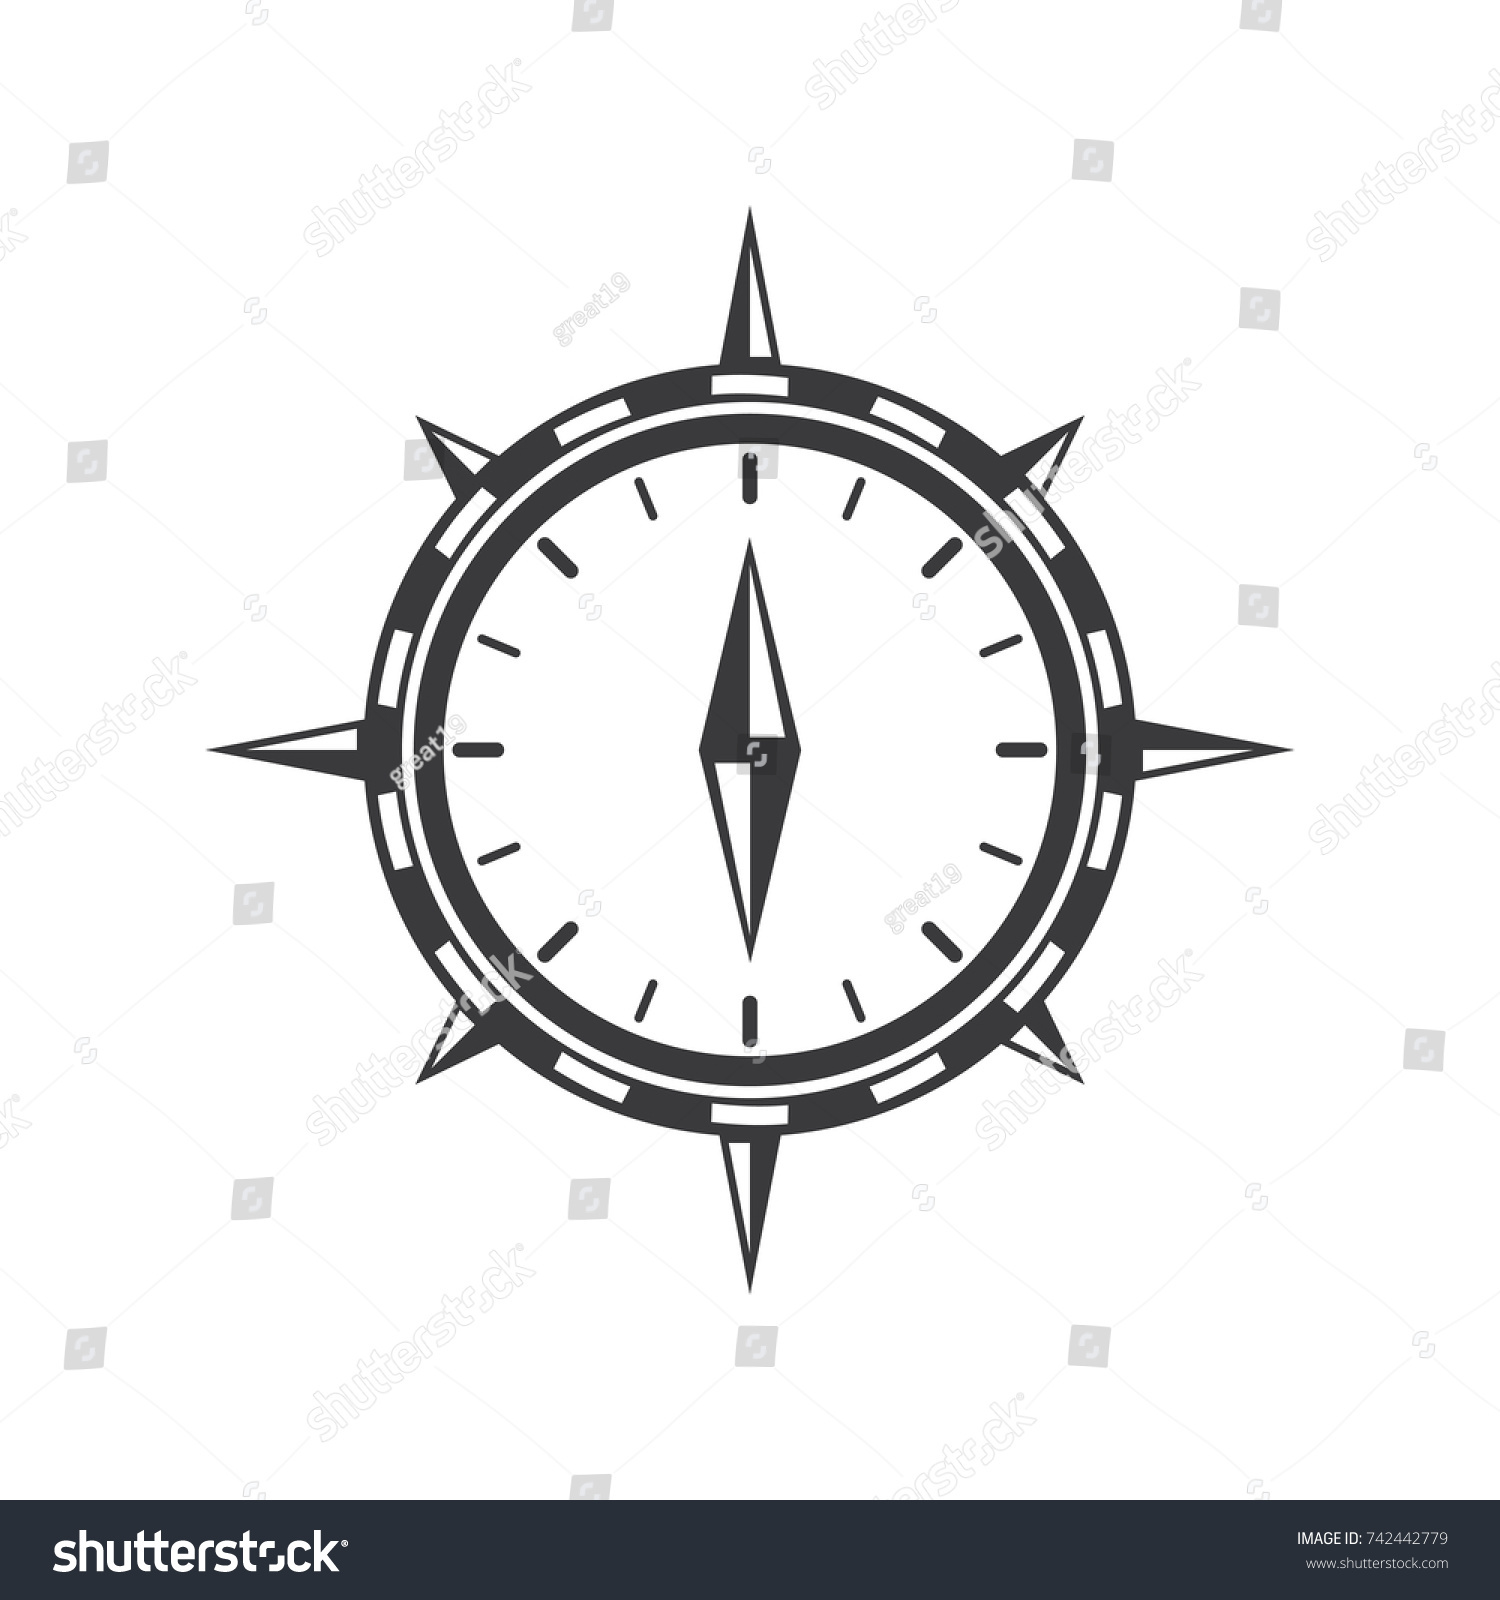 Black White Compass Illustration Stock Vector 742442779 - Shutterstock